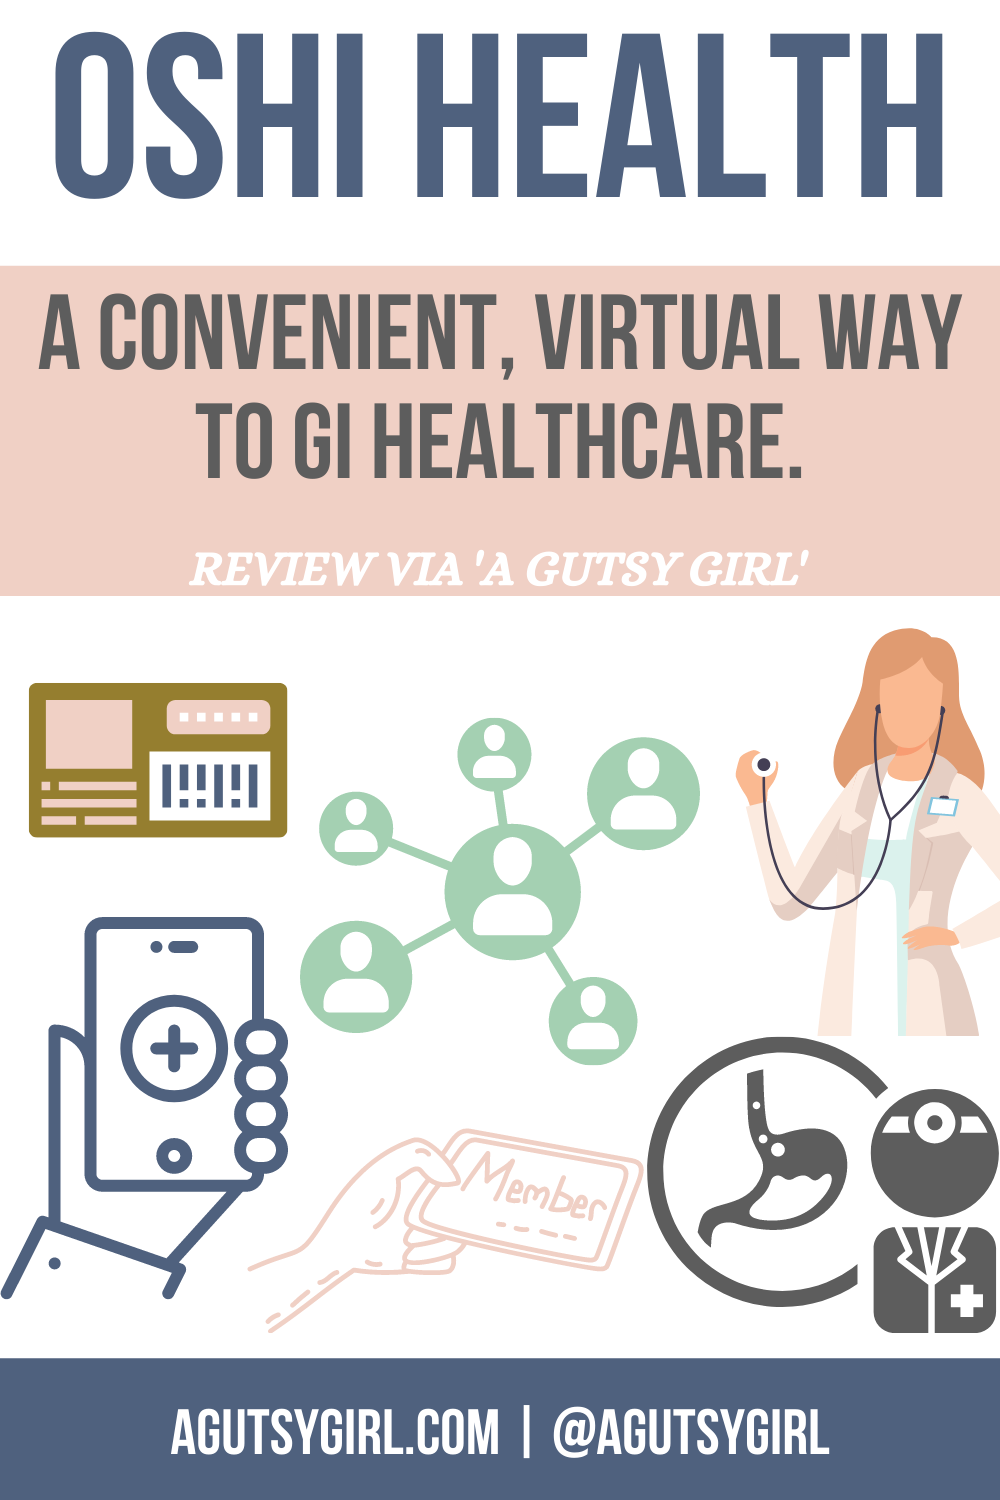 Review of Oshi Virtual Healthcare with A Gutsy Girl agutsygirl.com #gi #guthealth #oshi